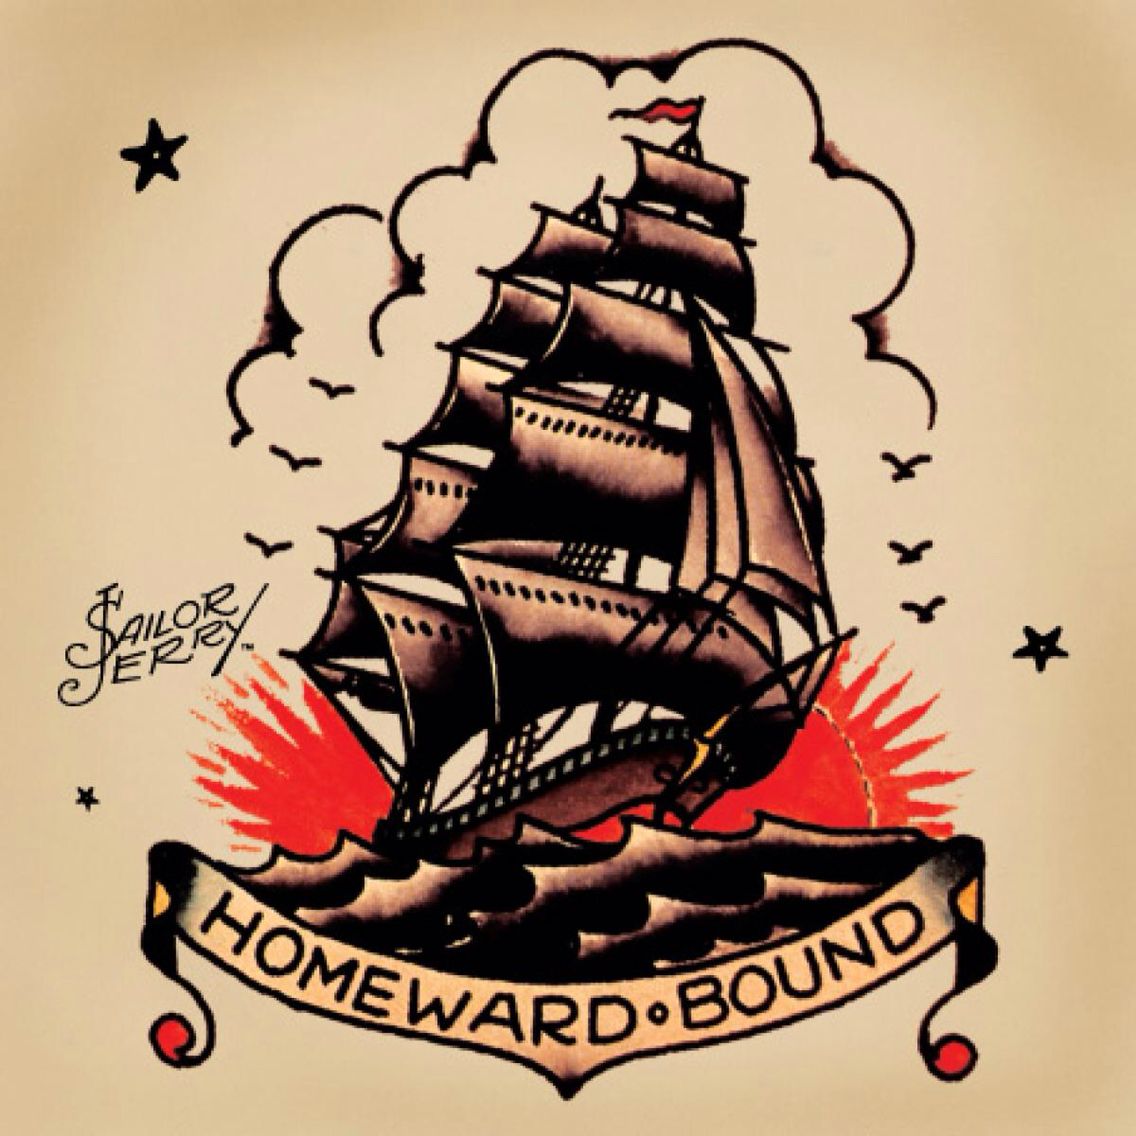 sailor jerry tatuaje de barco estilo americana